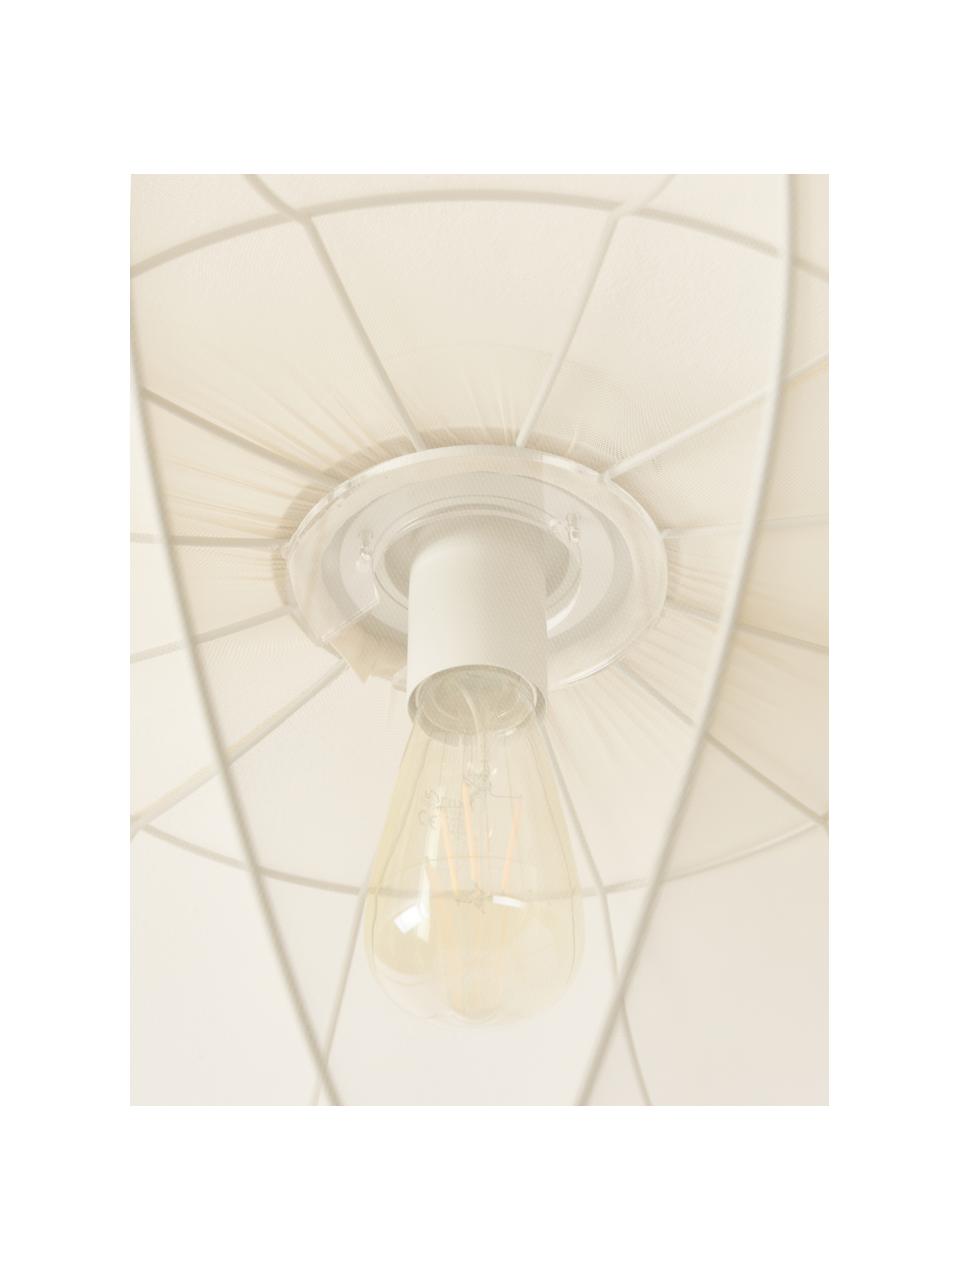 Plafondlamp Beau van netstof, Lampenkap: textiel, Lichtbeige, B 60 x H 29 cm